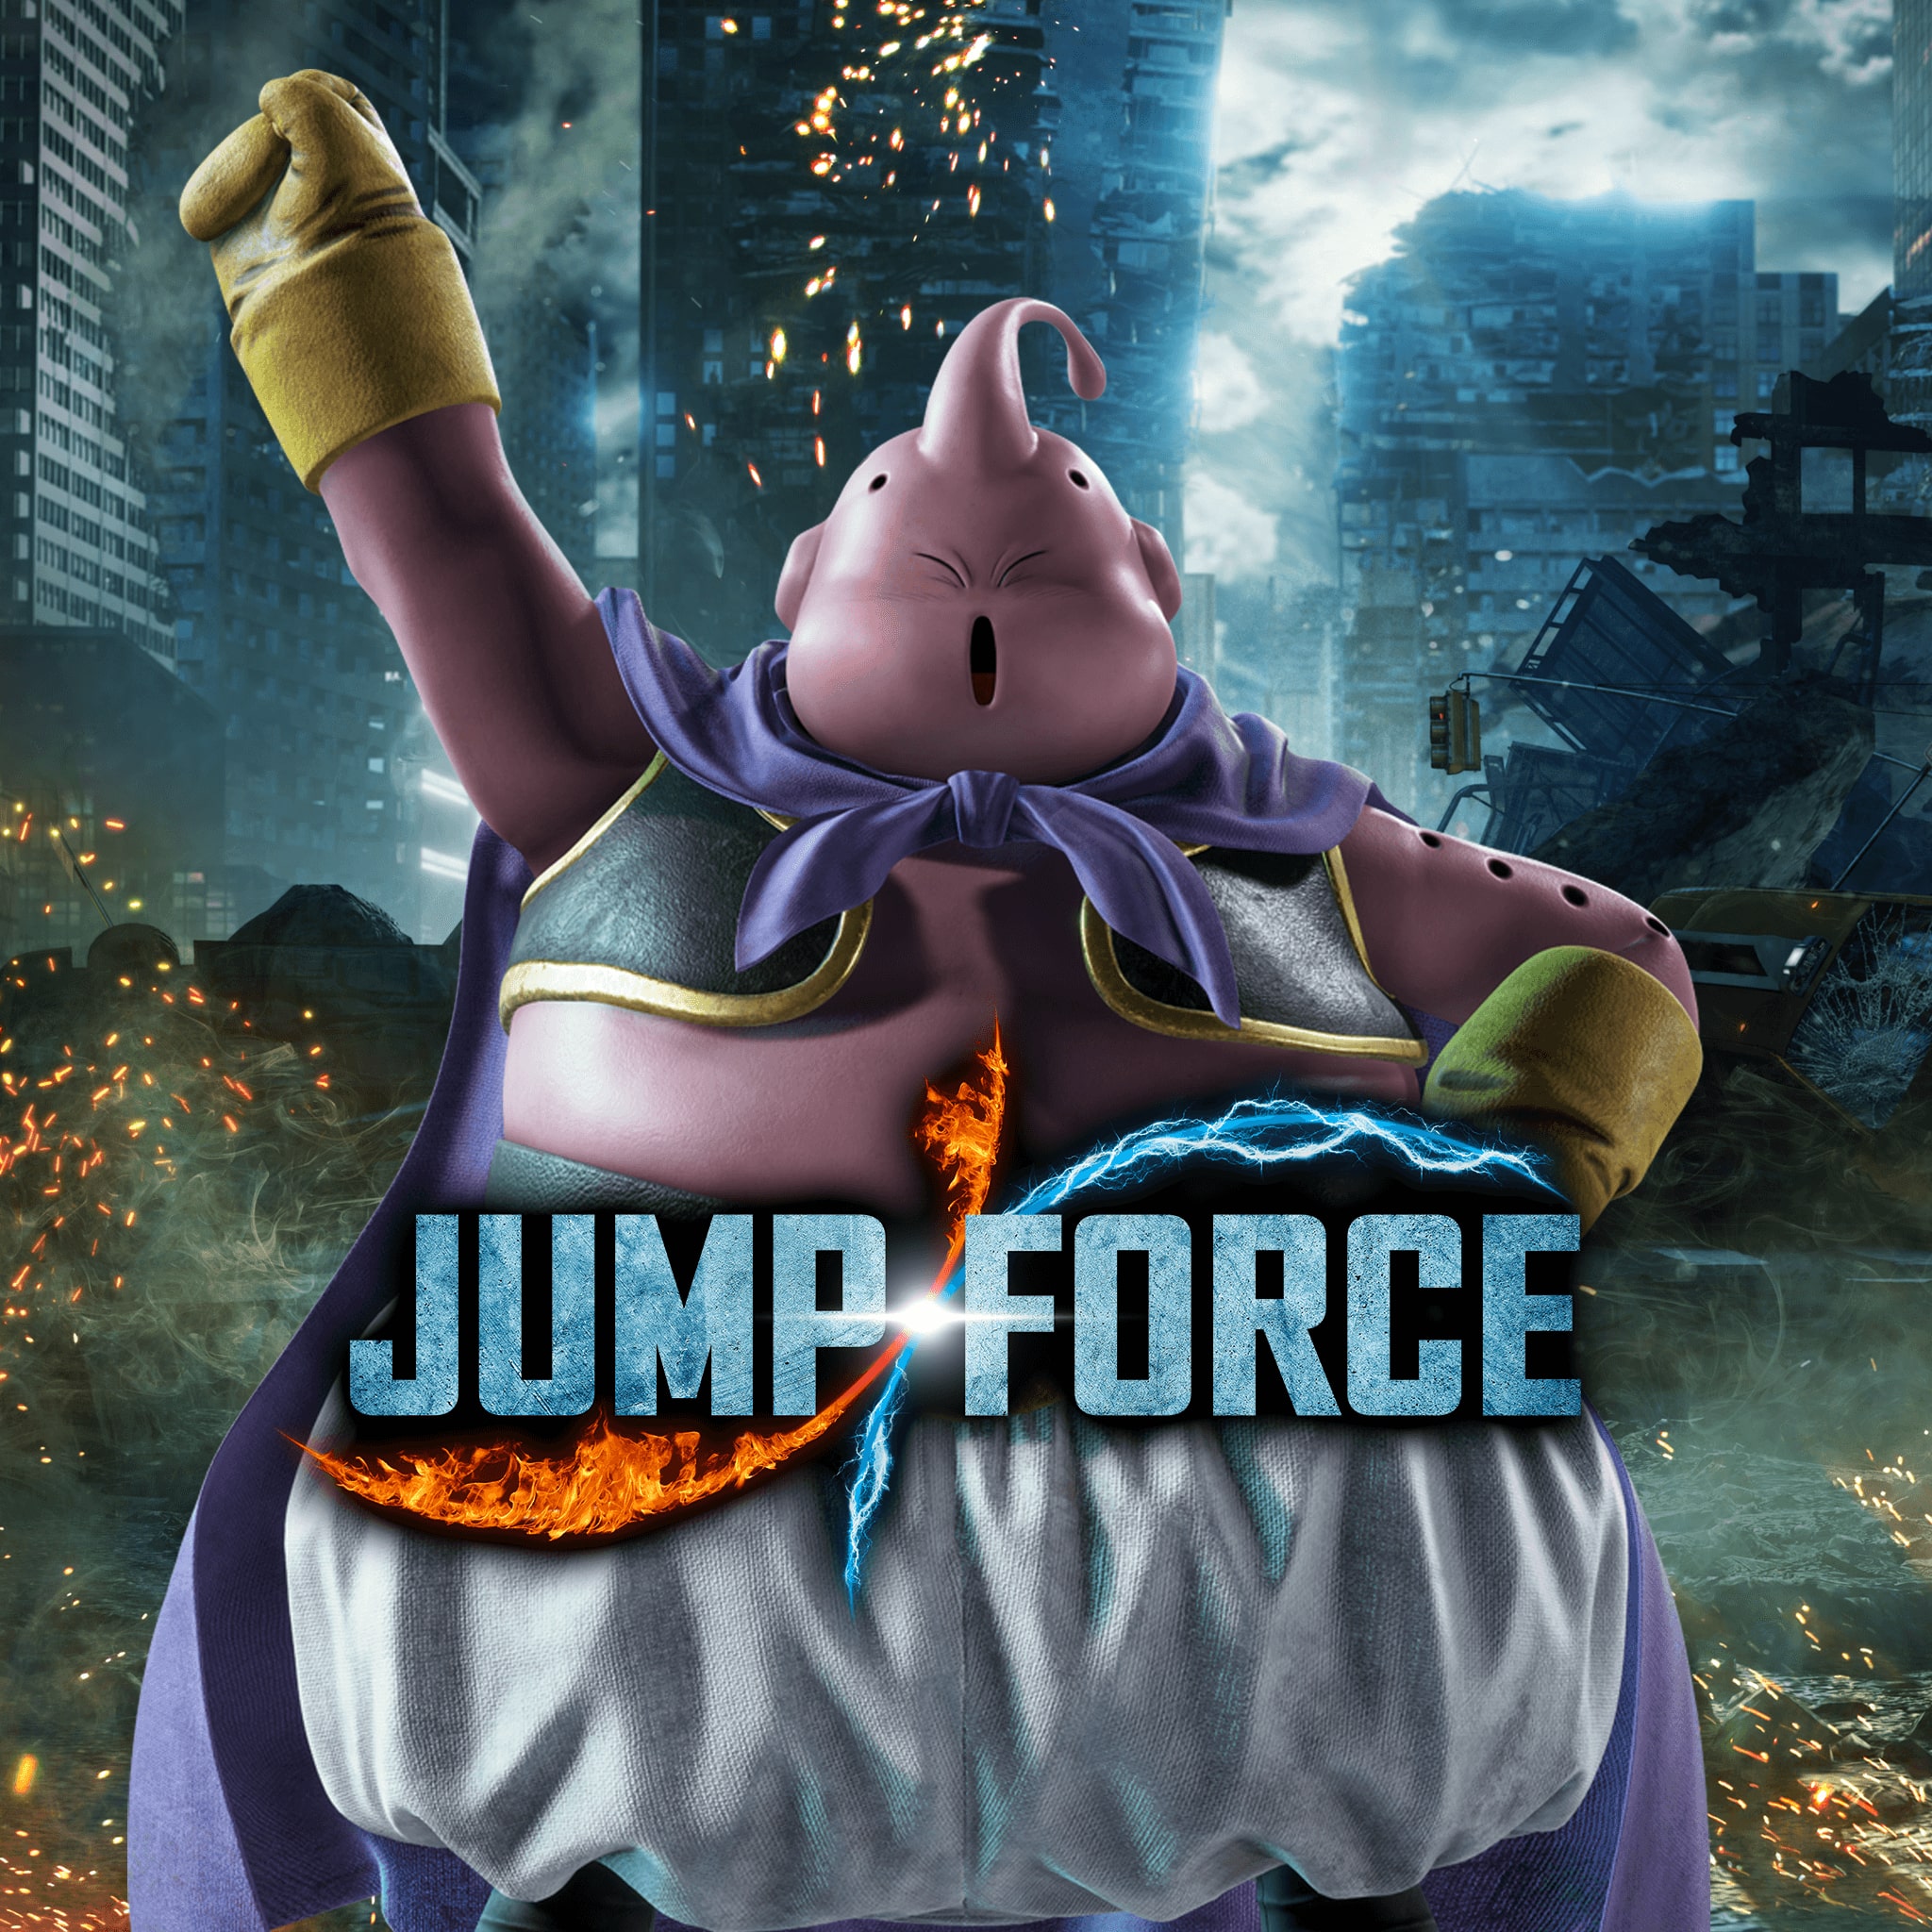 JUMP FORCE Character Pack 4: Majin Buu (Good)